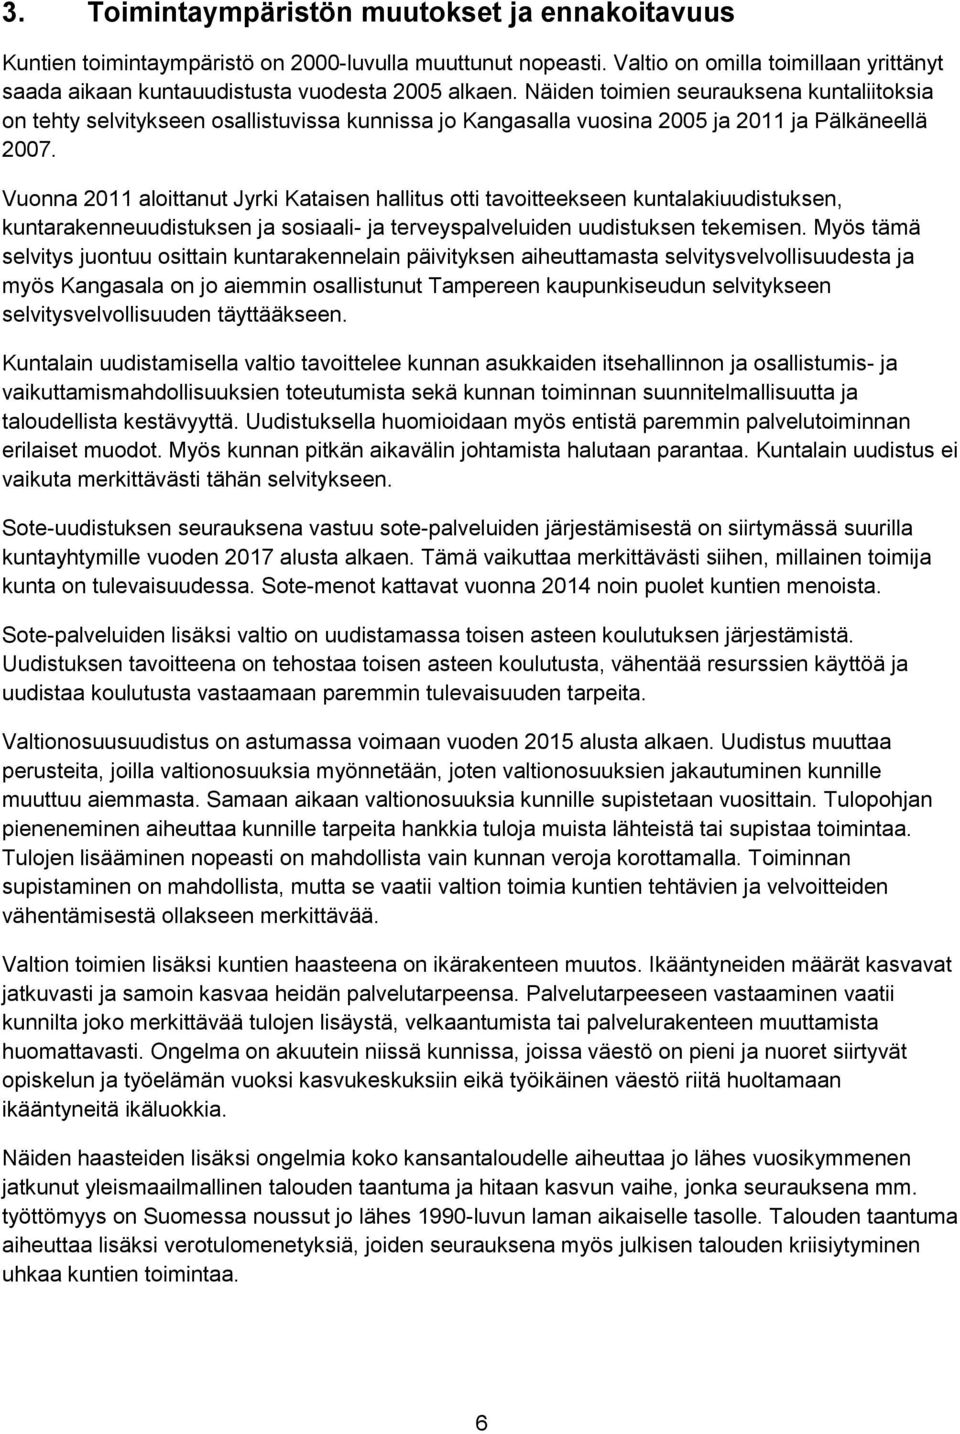 Vuonna 2011 aloittanut Jyrki Kataisen hallitus otti tavoitteekseen kuntalakiuudistuksen, kuntarakenneuudistuksen ja sosiaali- ja terveyspalveluiden uudistuksen tekemisen.